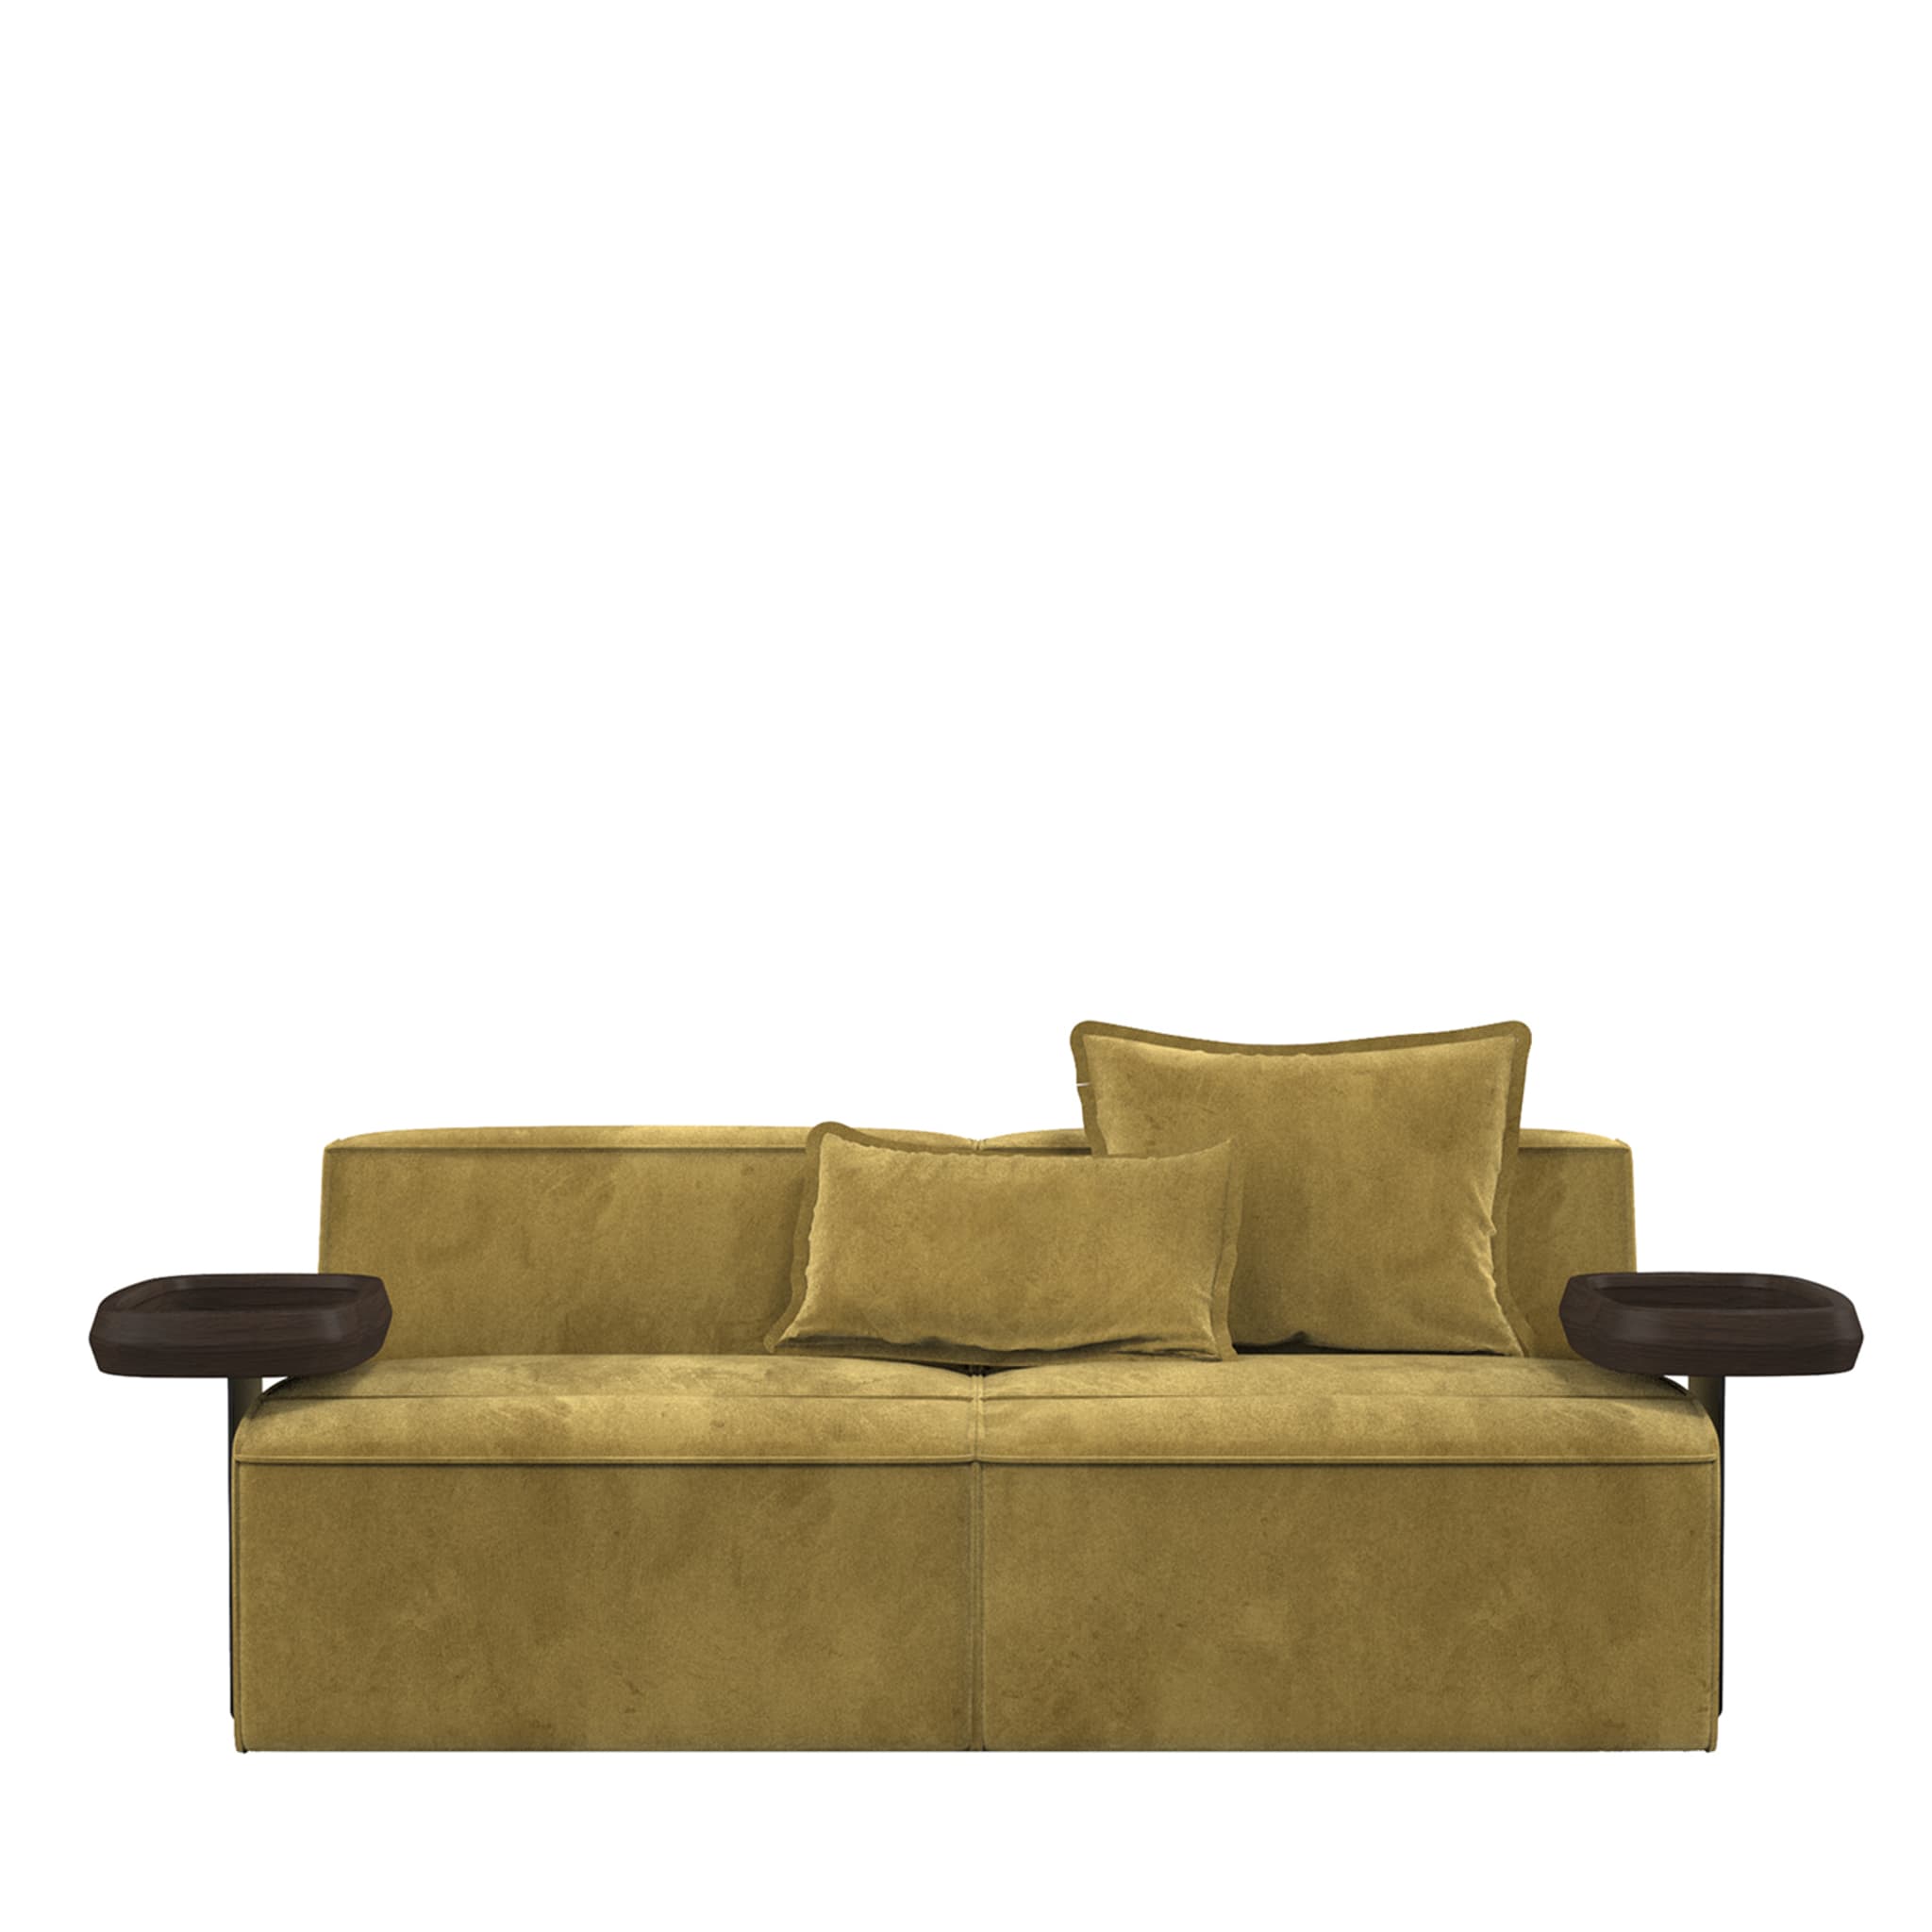 Infinito Kleines grünes sofa mit beistelltischen by Lorenza Bozzoli - Hauptansicht